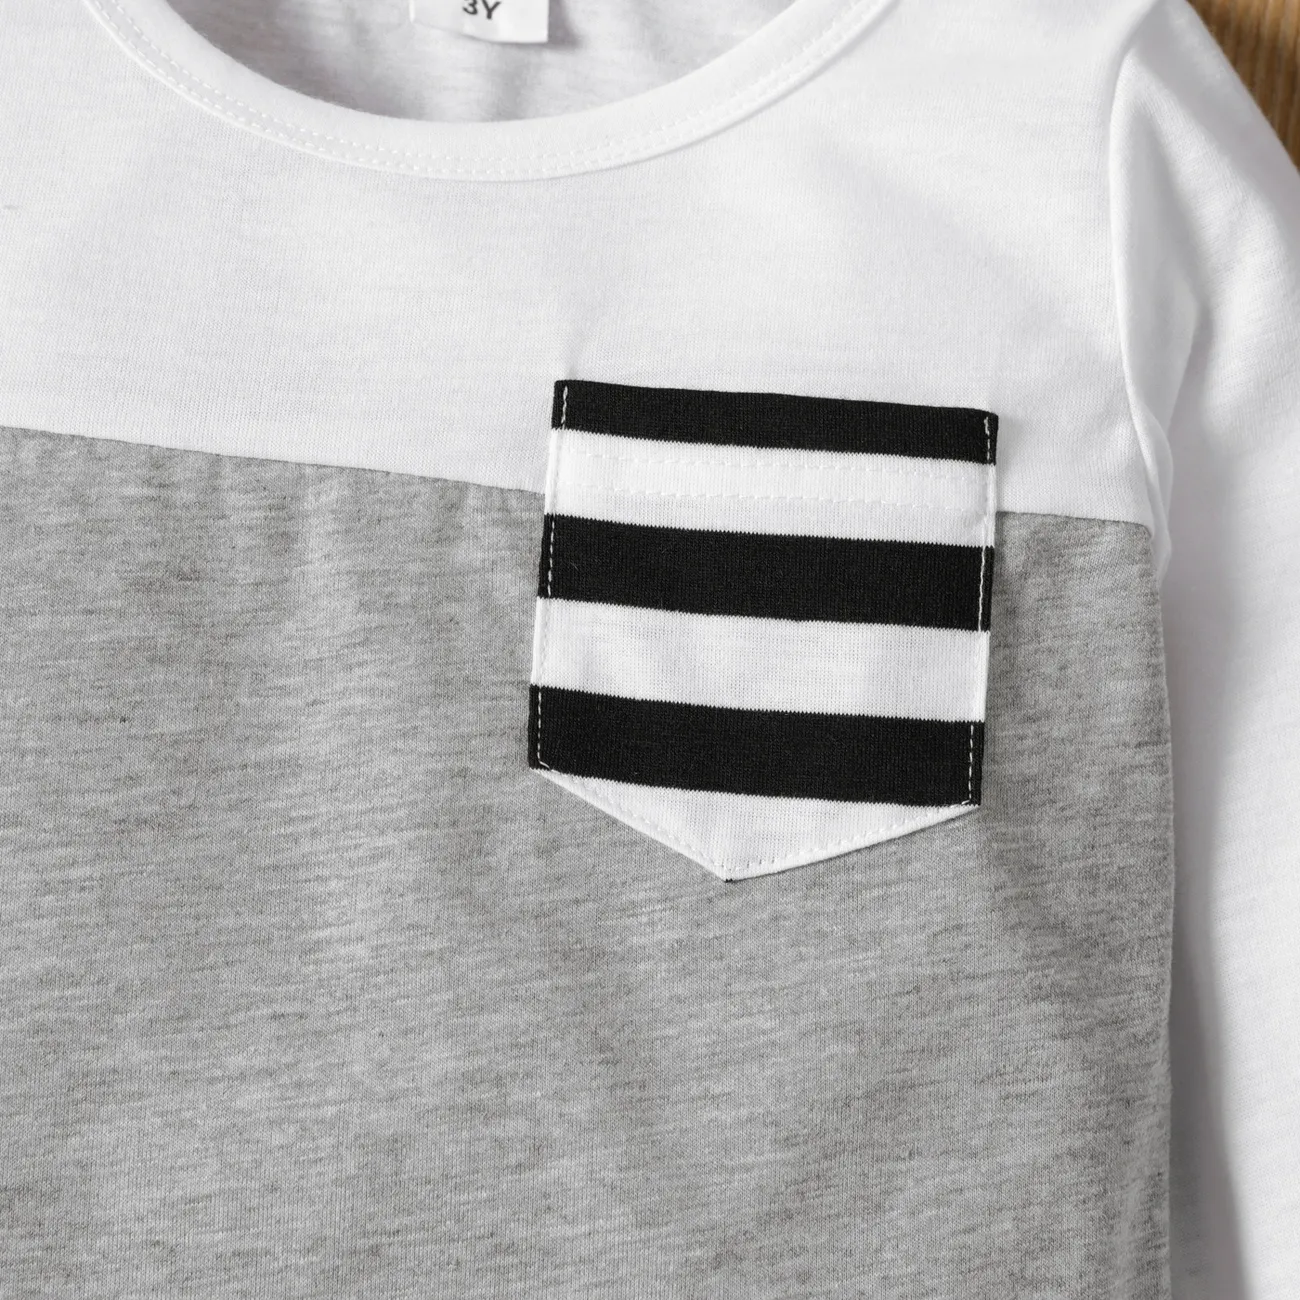 Enfant en bas âge Garçon Couture de tissus Décontracté Manches longues T-Shirt Blanc big image 1